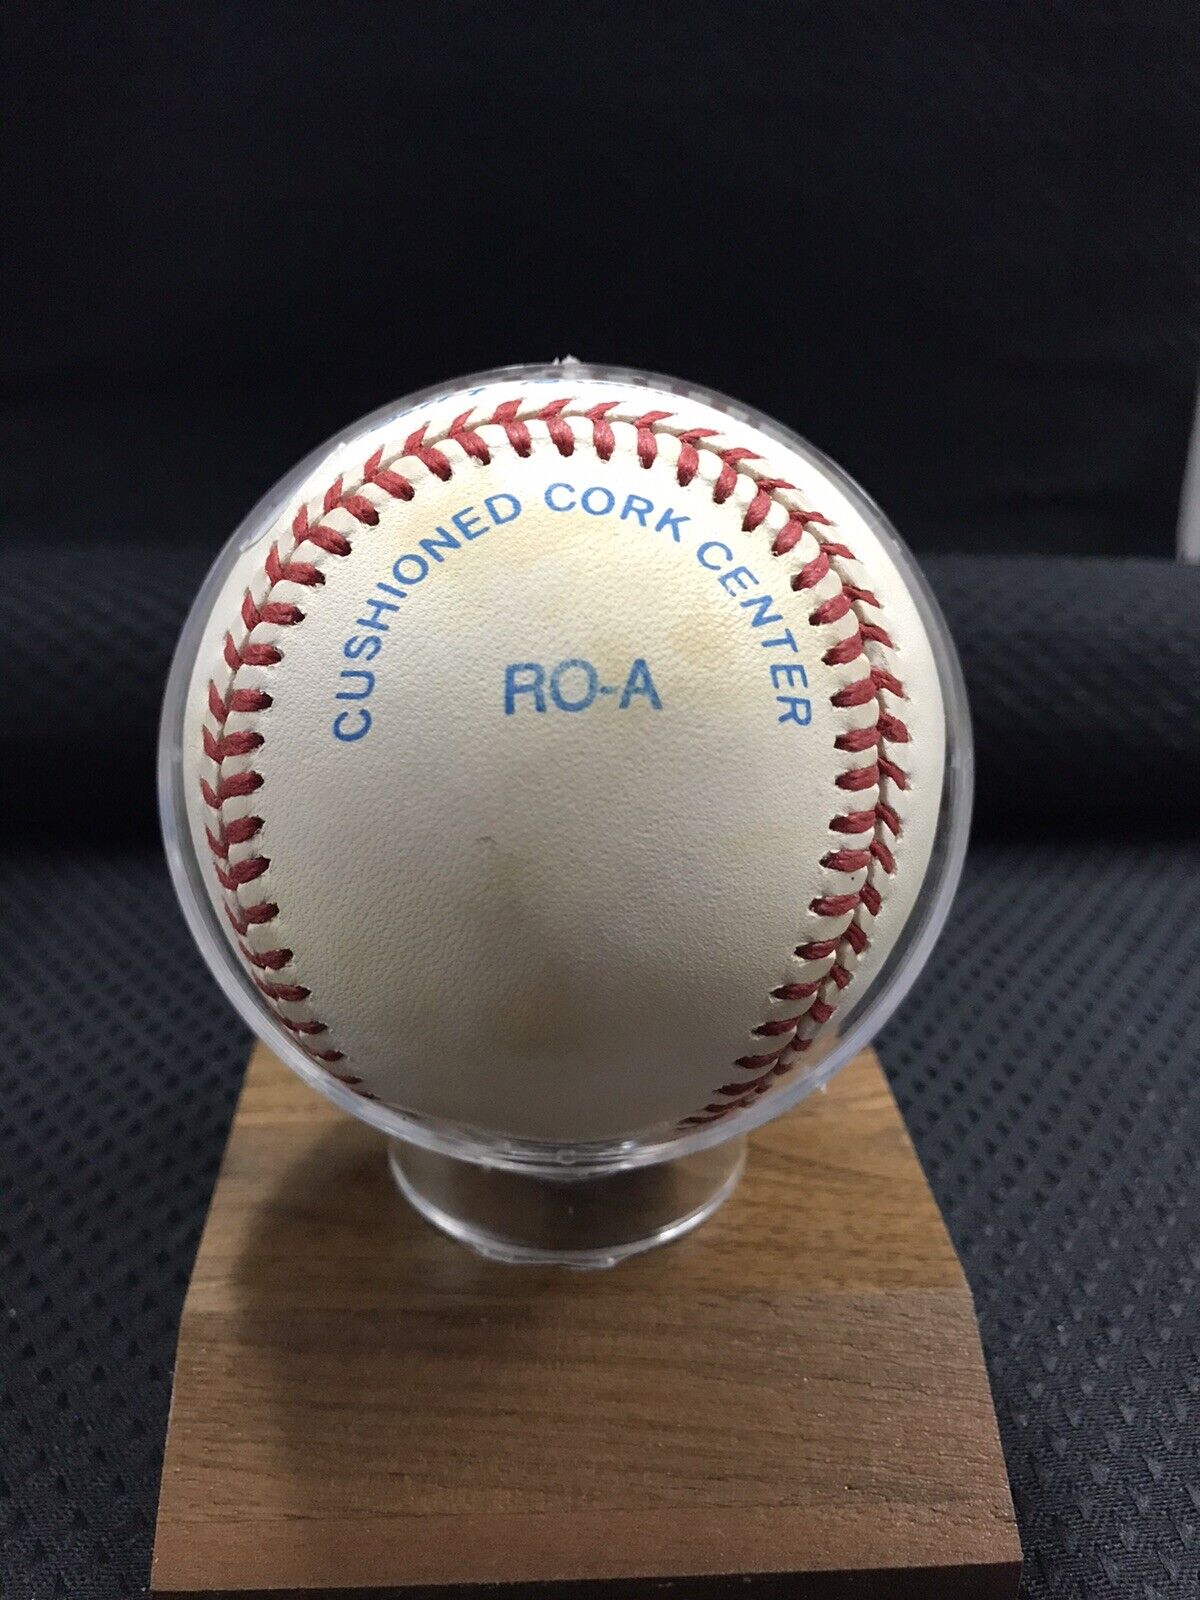 Derek Jeter Signed Rawlings Baseball JSA COA LOA Official League Baseball 